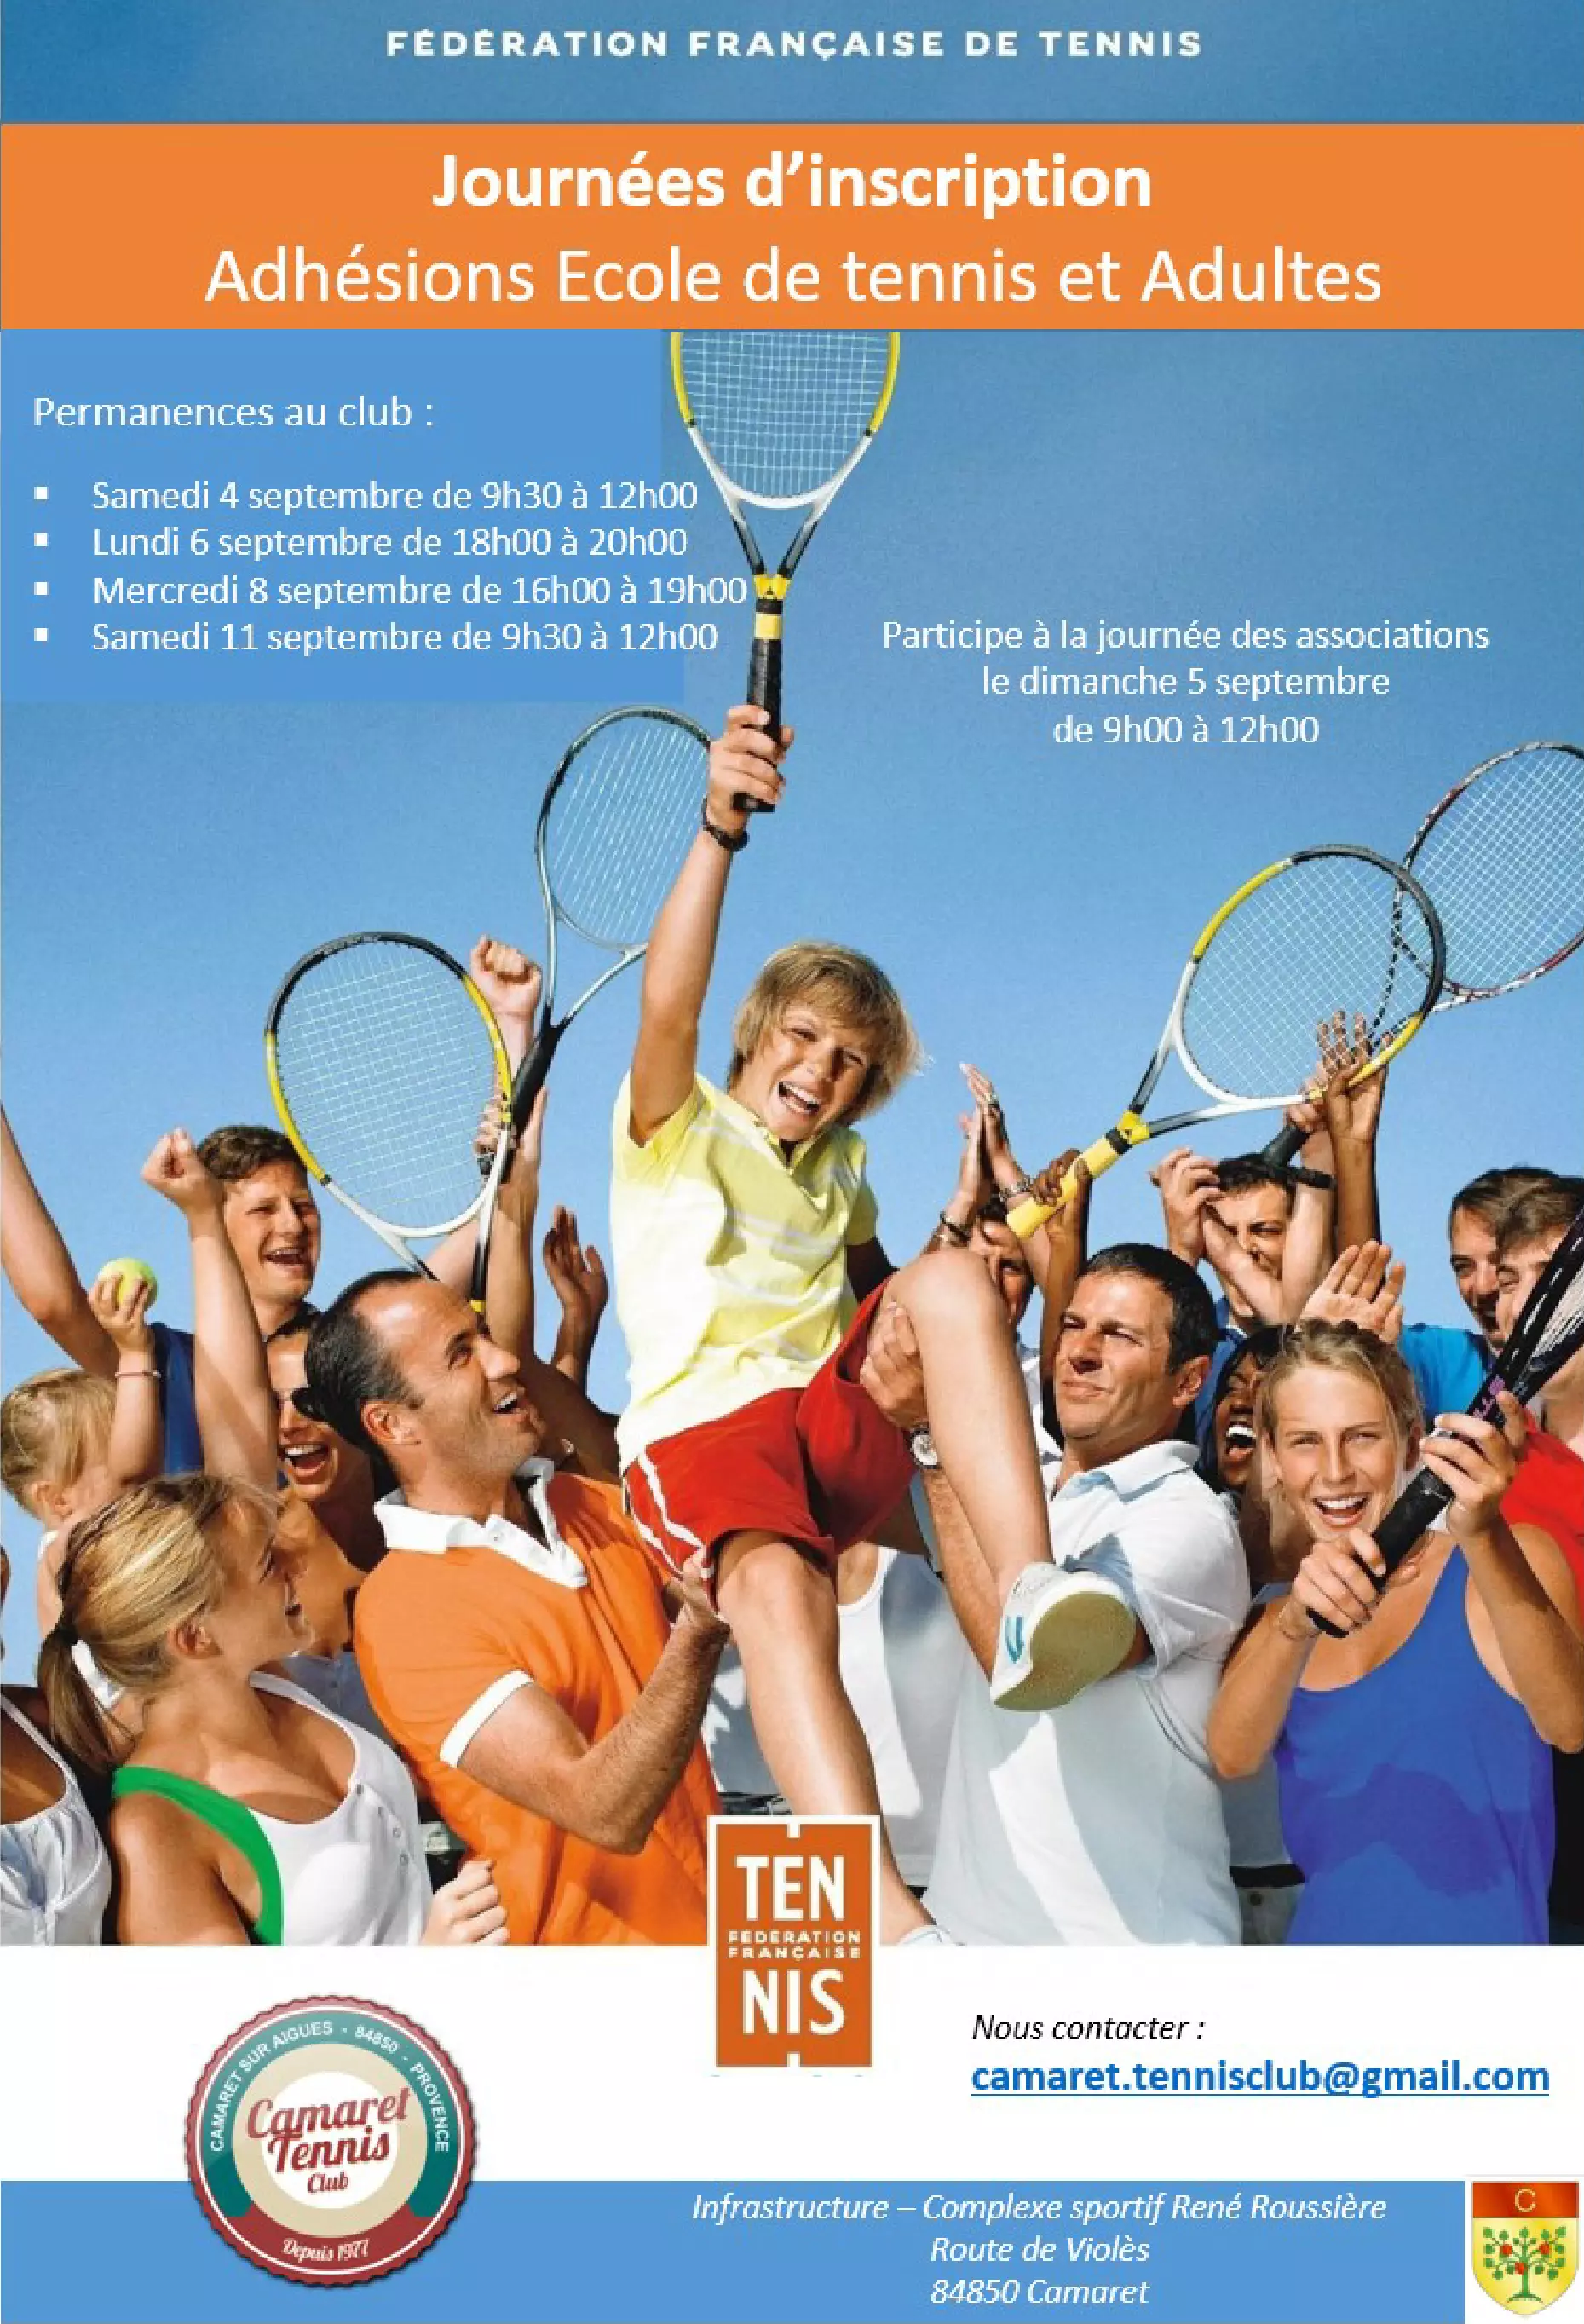 Le Camaret Tennis Club vous informe sur leurs permanences d'adhésion